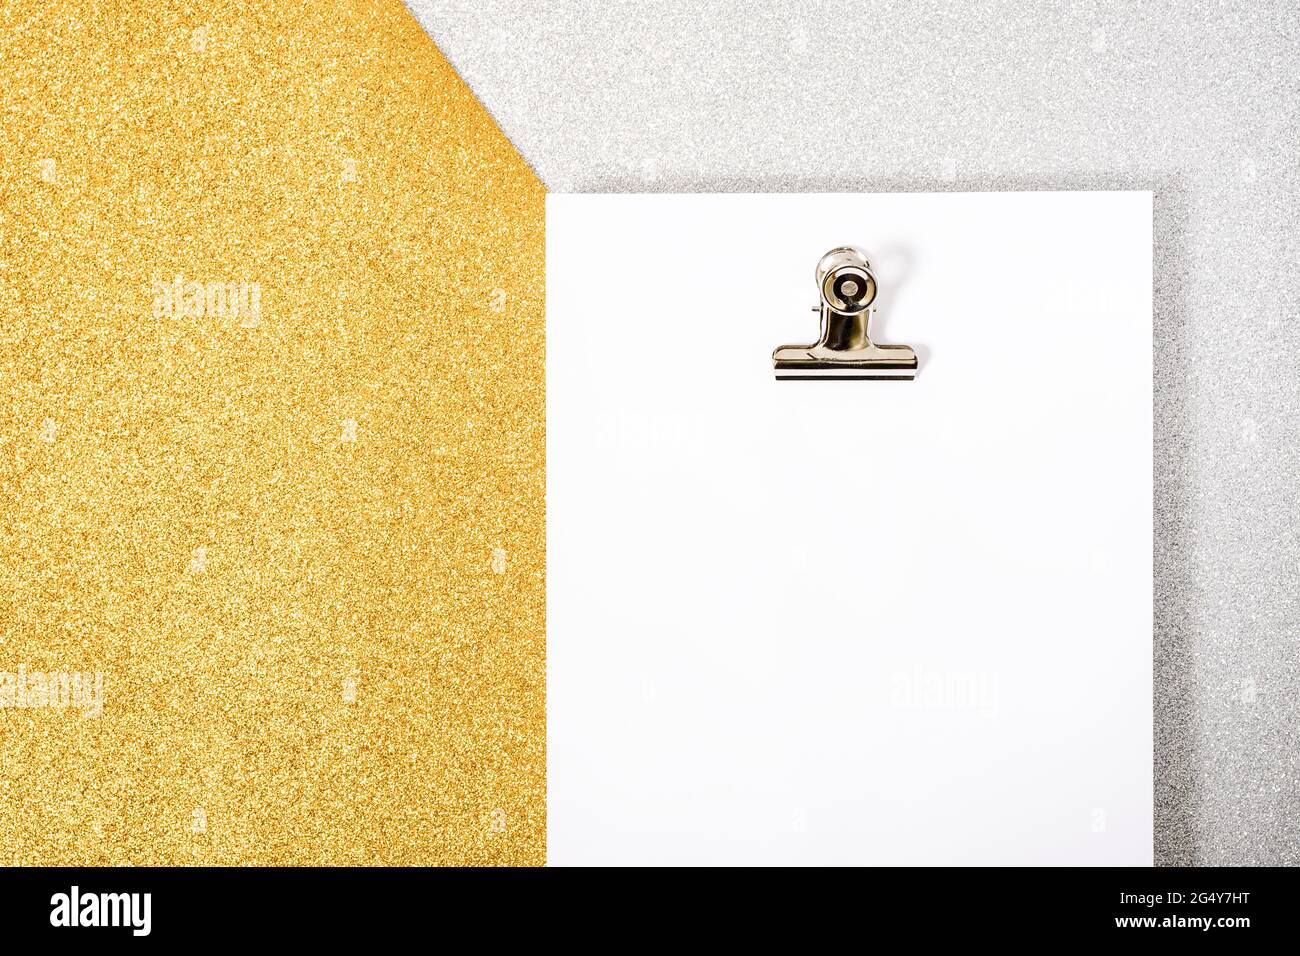 Foto eines White Foil Packs und einer Büroklammer auf einem texturierten Silber- und Goldhintergrund. Das Foto hat einen Kopierraum, es wird von einem Überkopfpo aufgenommen Stockfoto